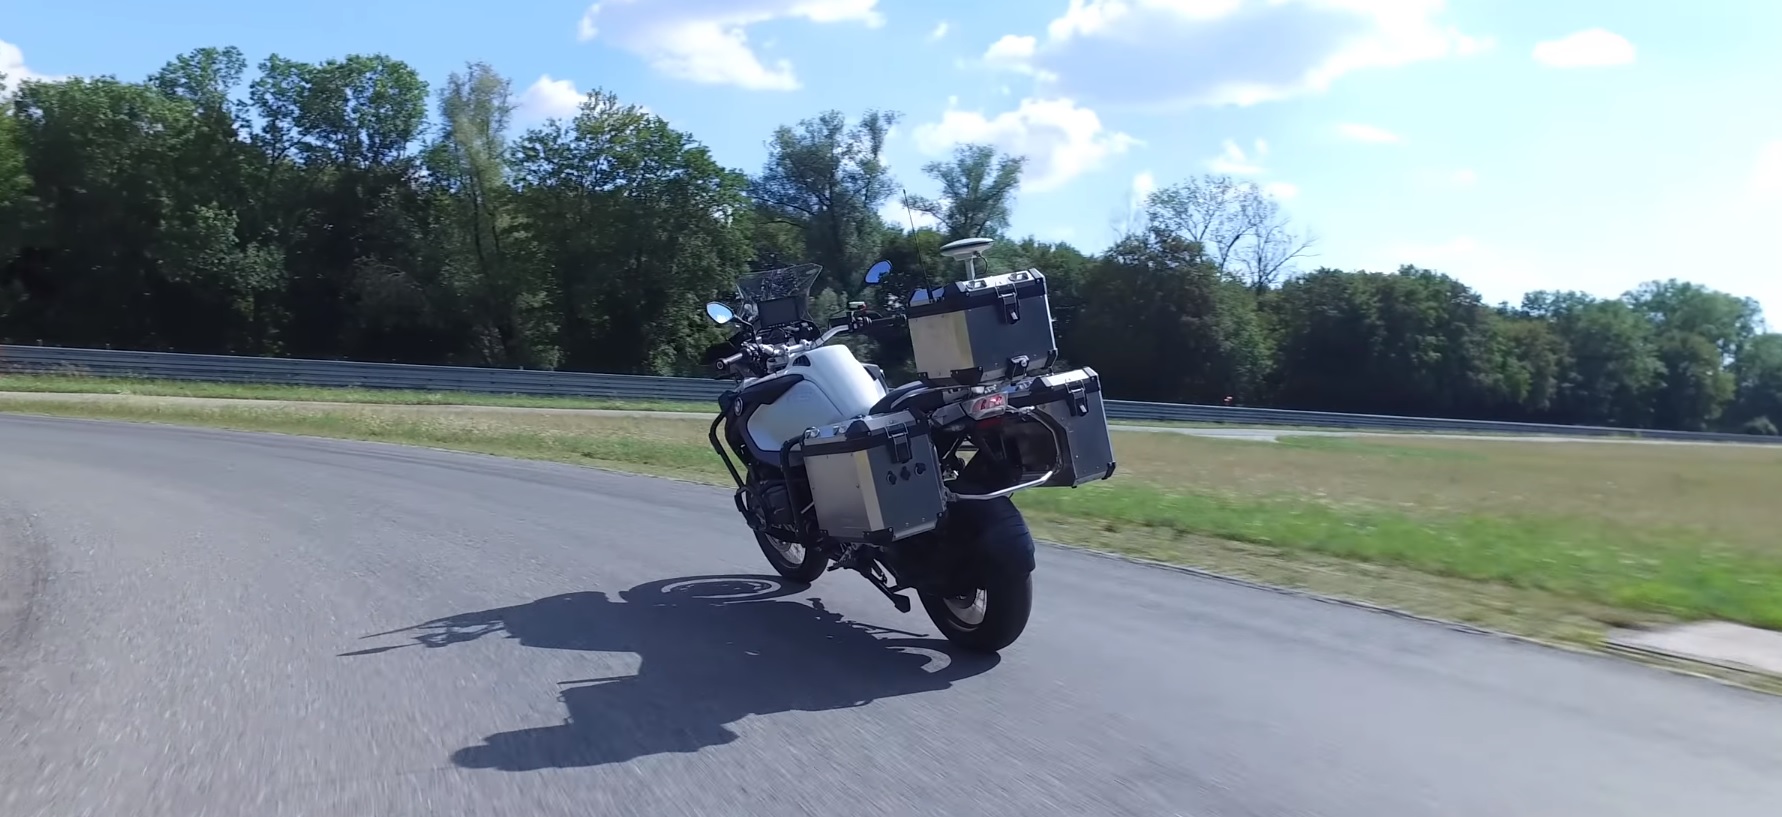 BMW har skapat en obemannad motorcykel för att testa nya säkerhetssystem